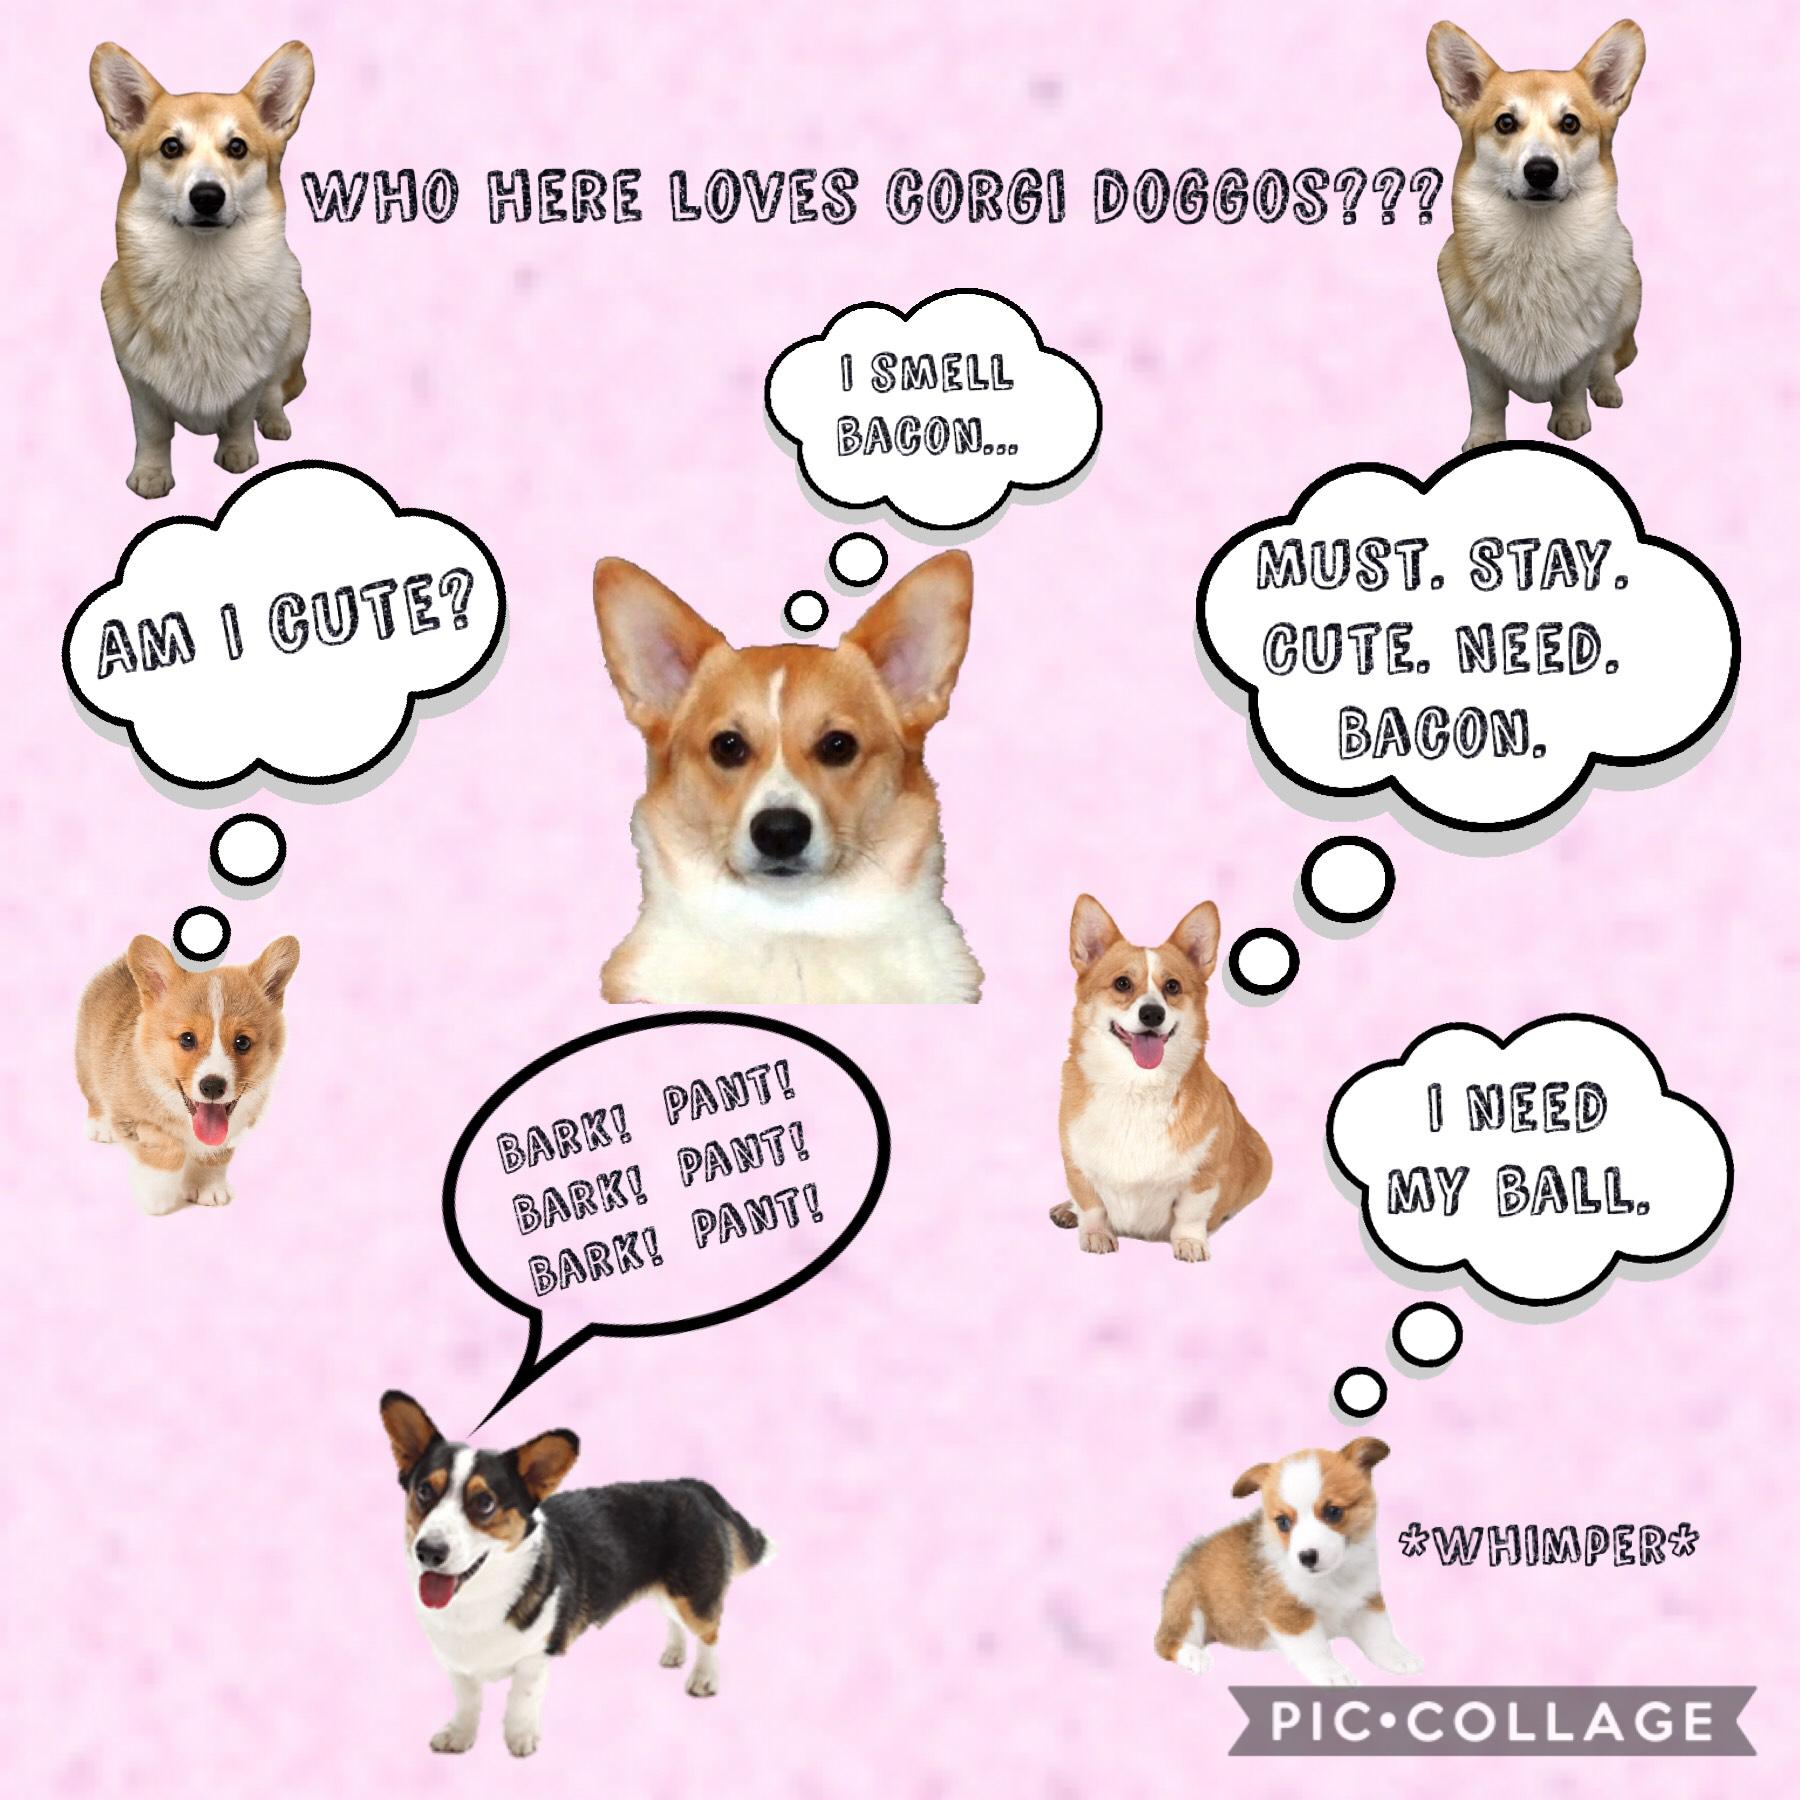 Who here loves corgi doggos???